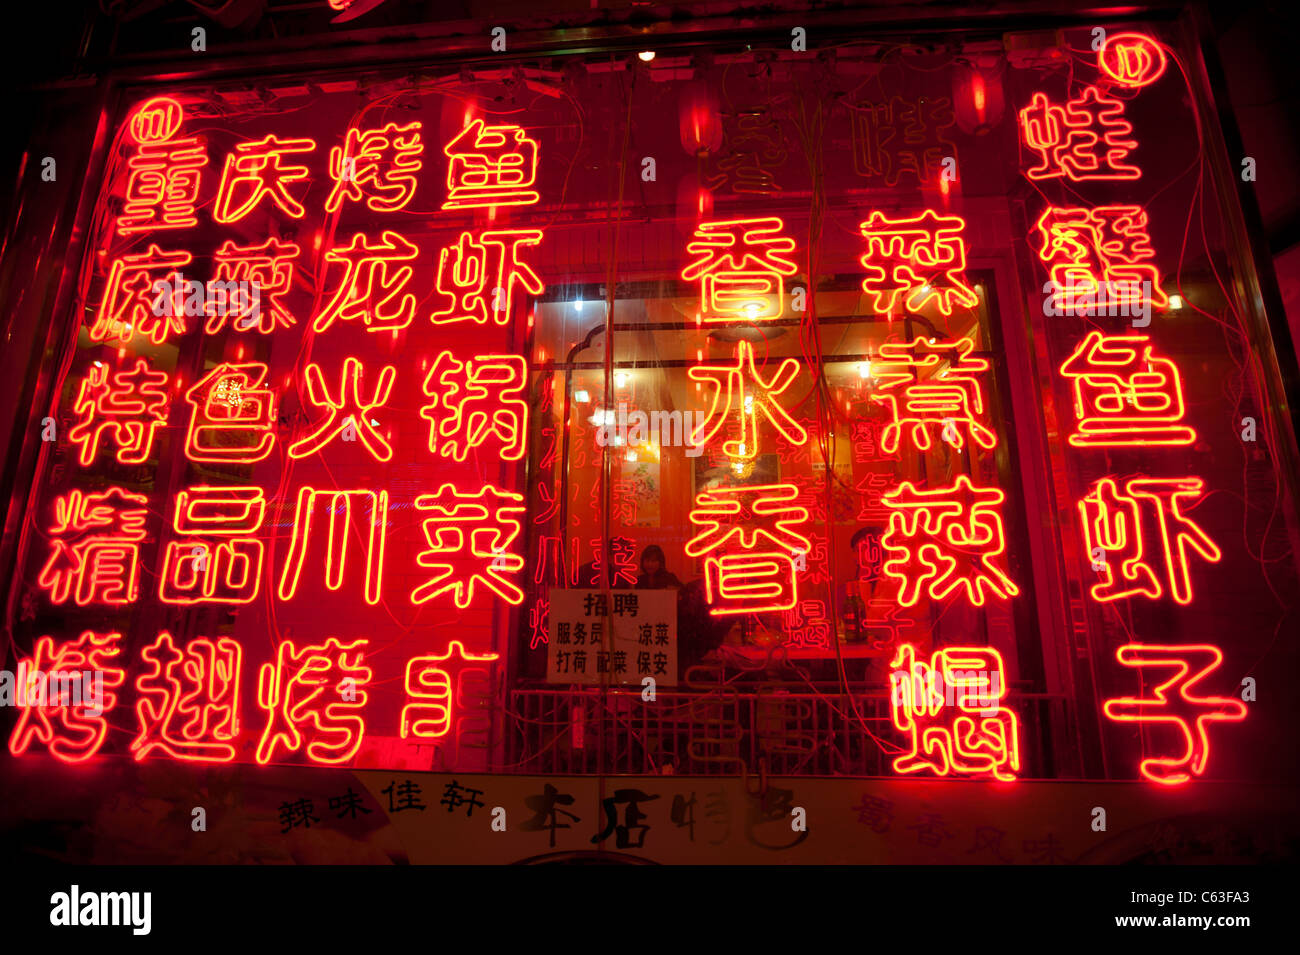 Viele rote Neon-Lichter in der Nacht beleuchten Menü im chinesischen Restaurant in Peking Stockfoto